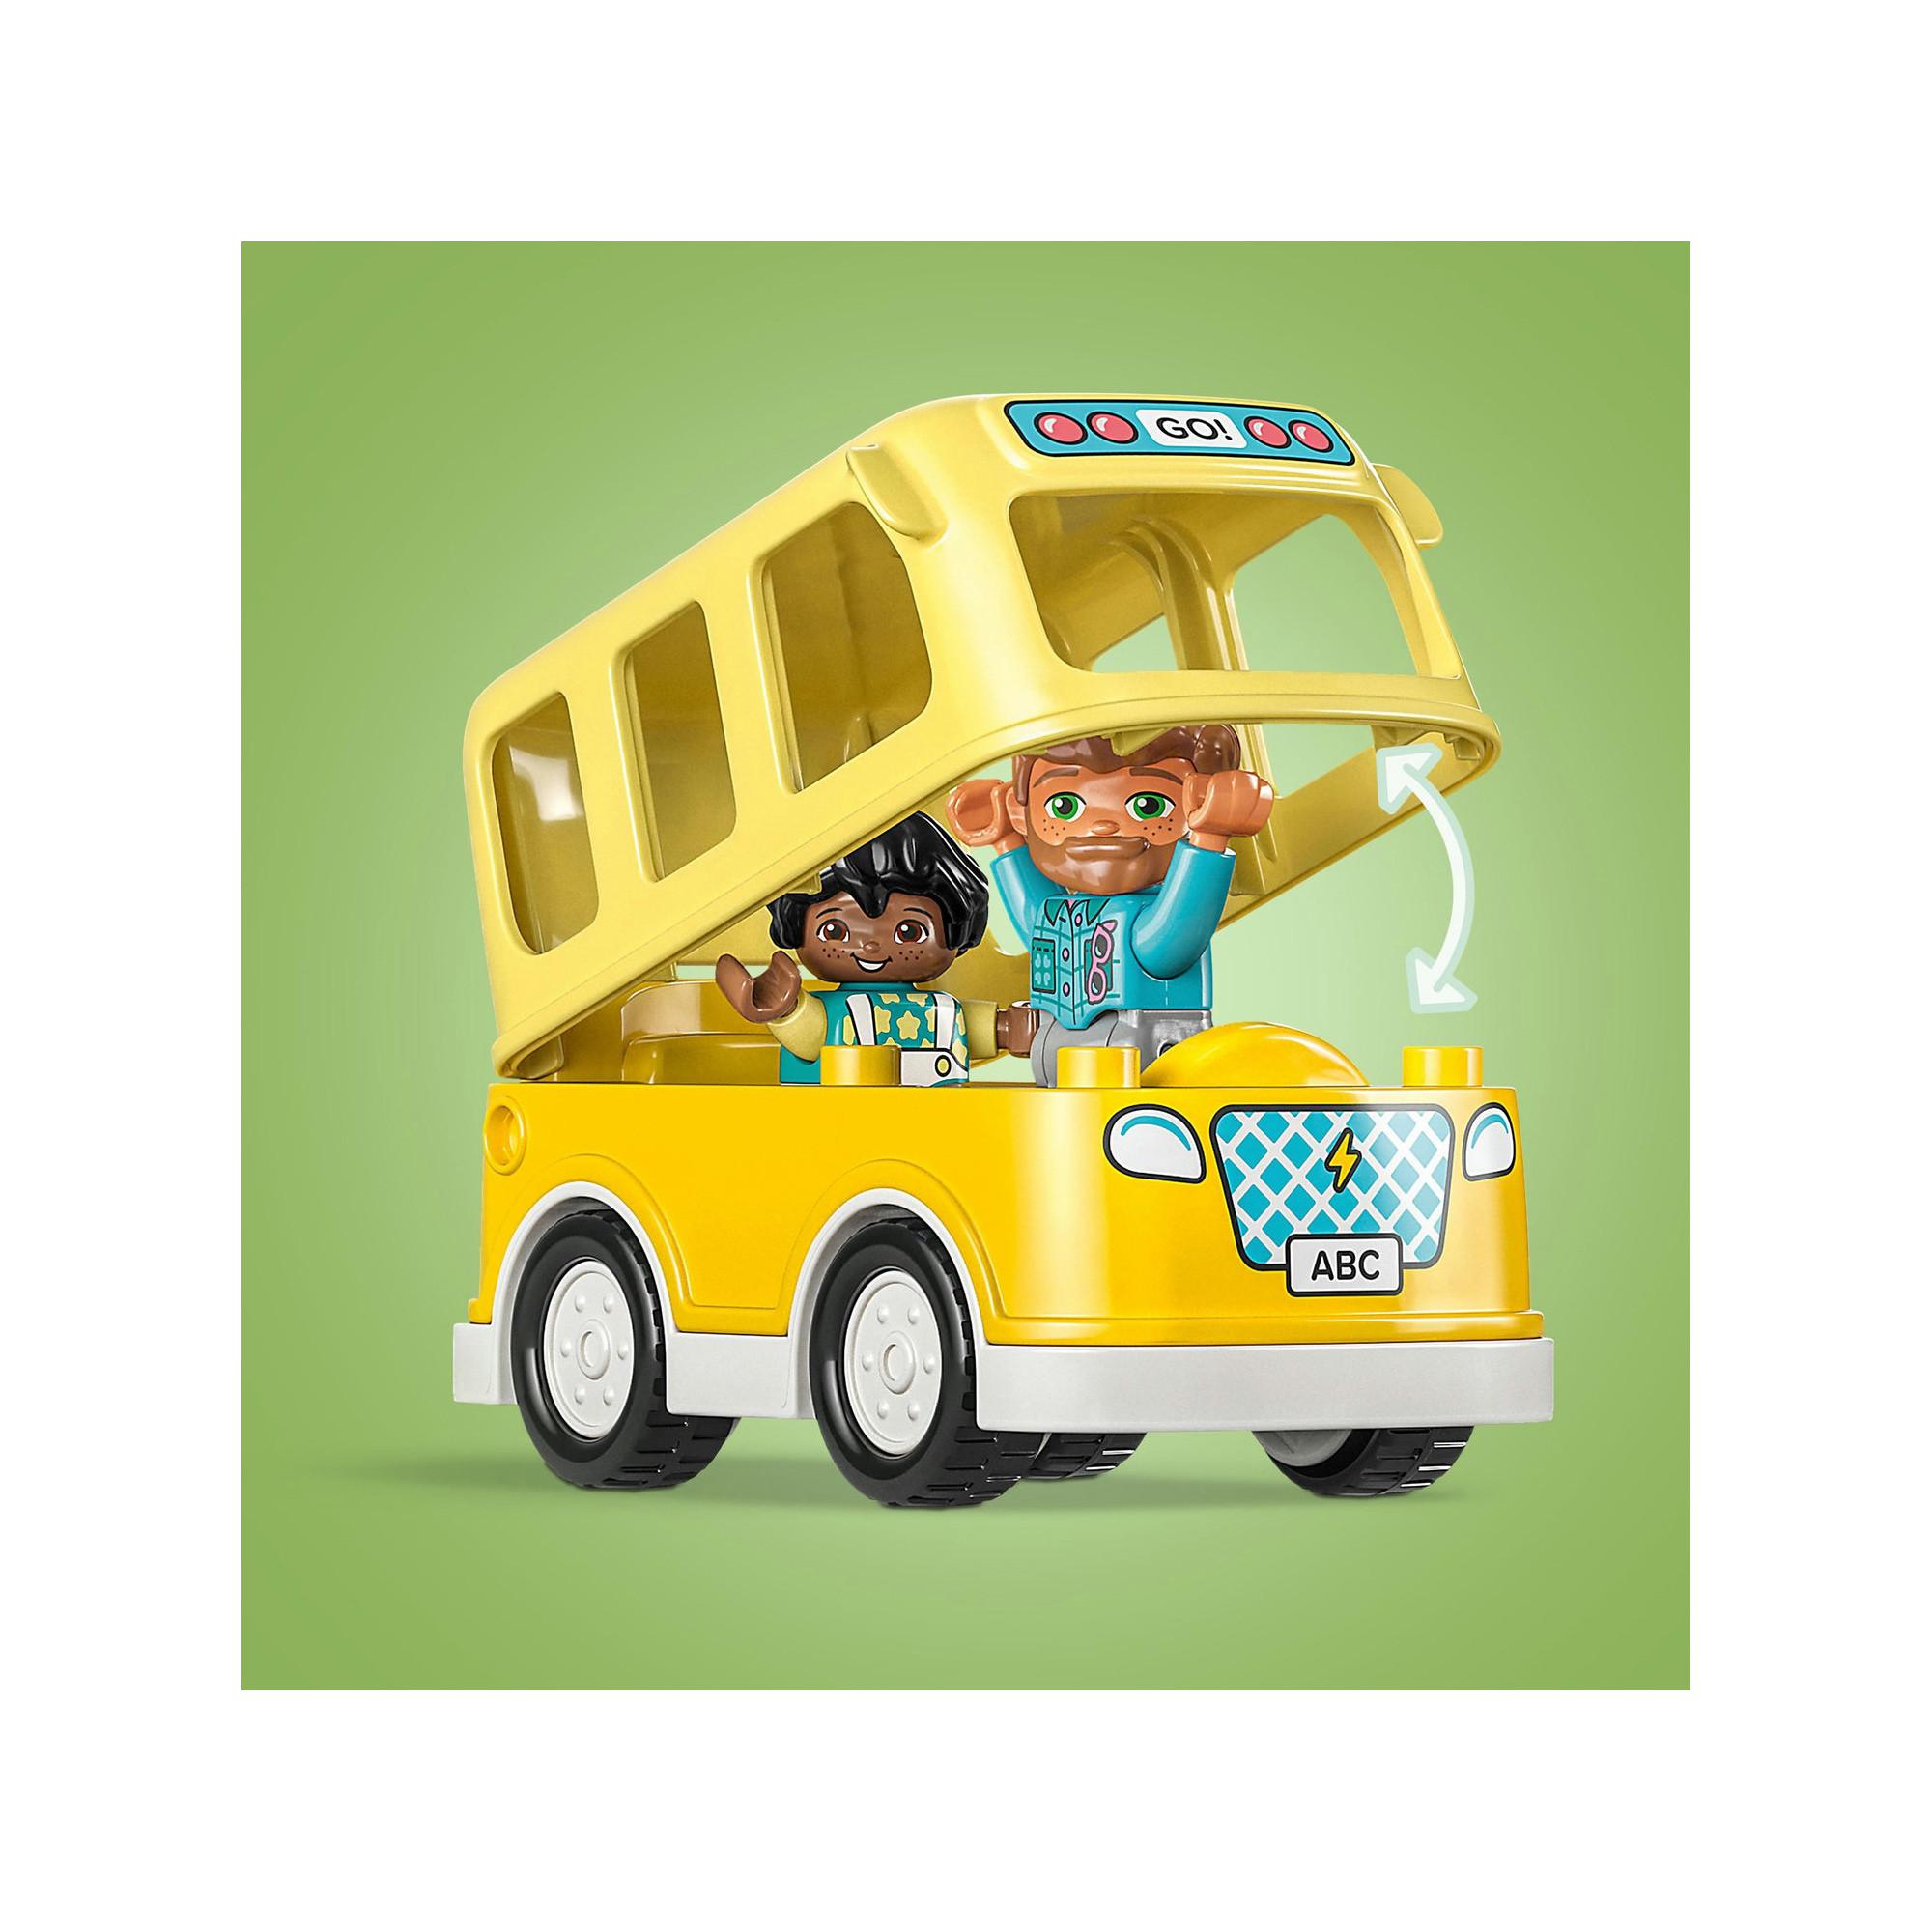 LEGO®  10988 Le voyage en bus 